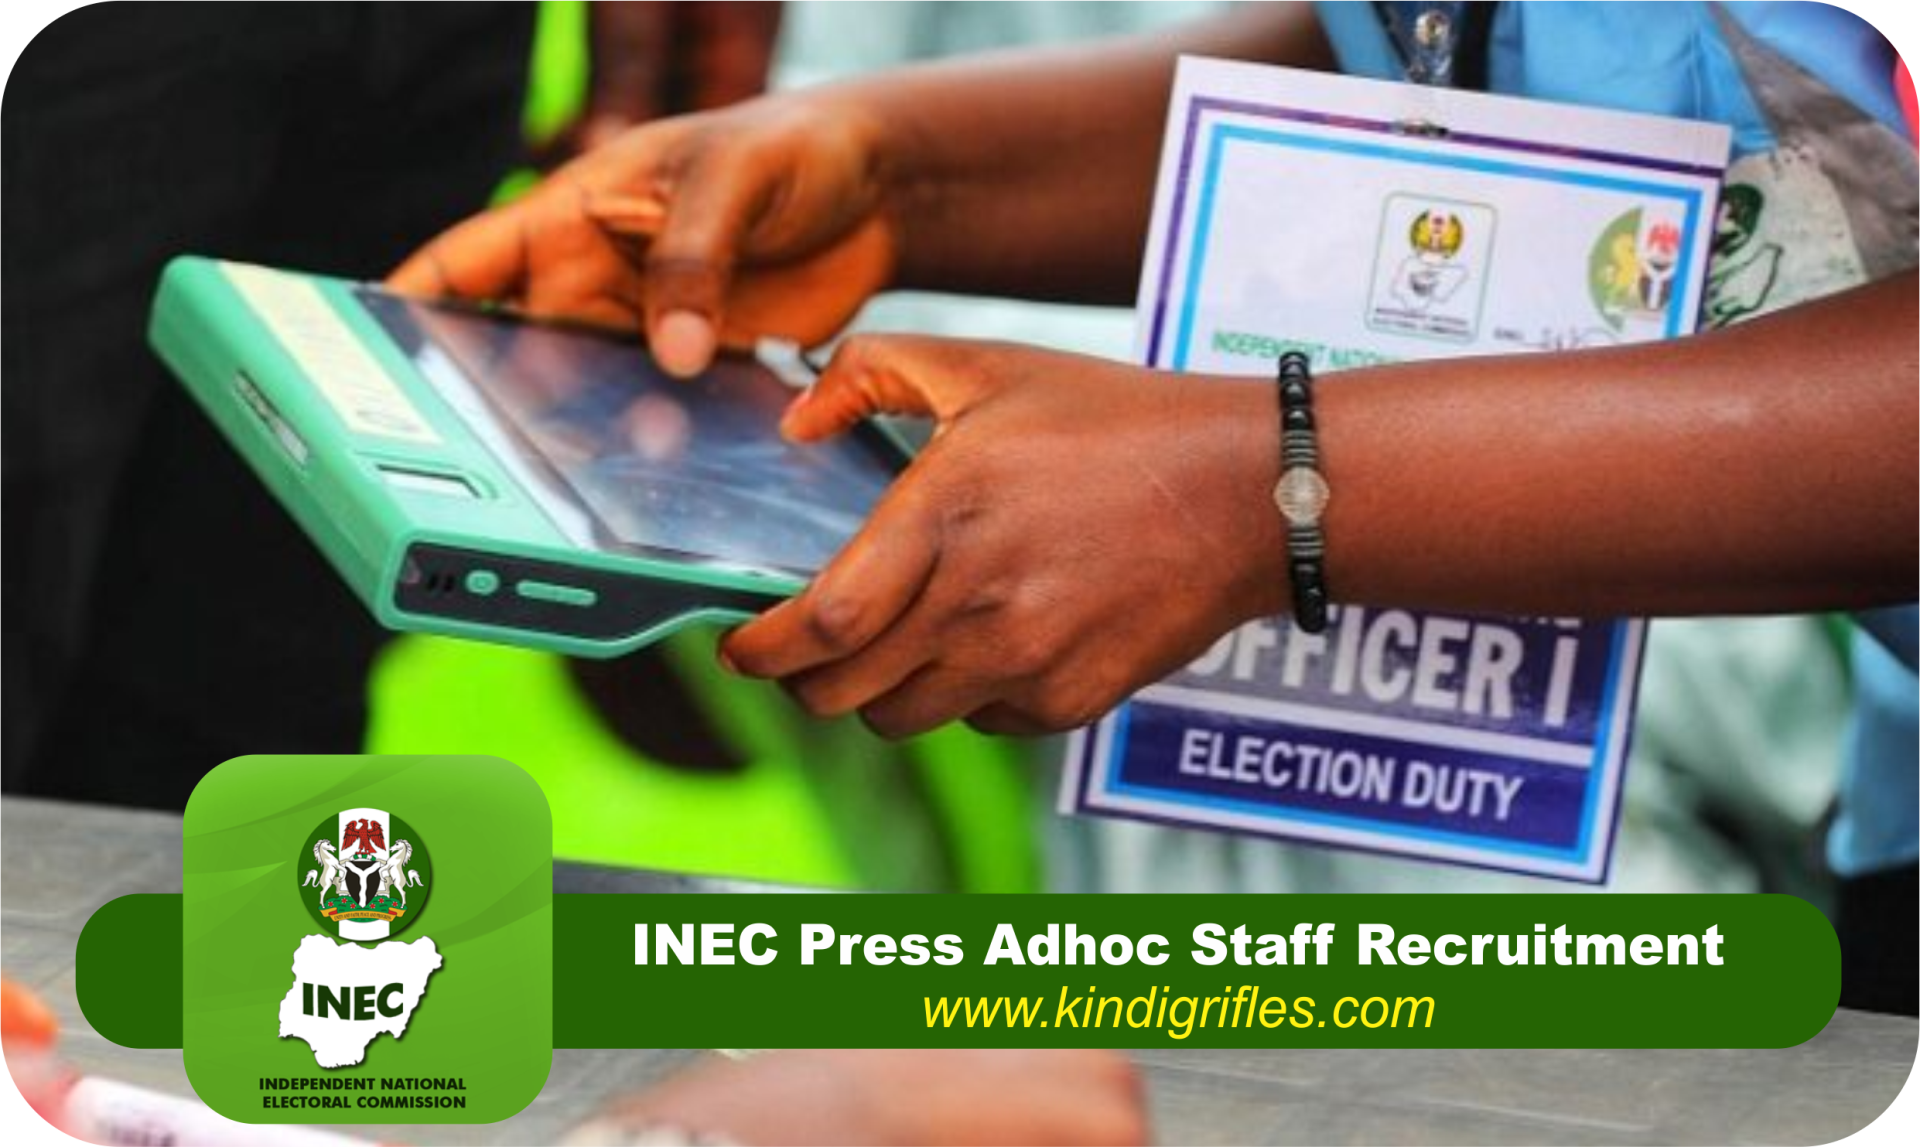 INEC Press Adhoc Staff Recruitment